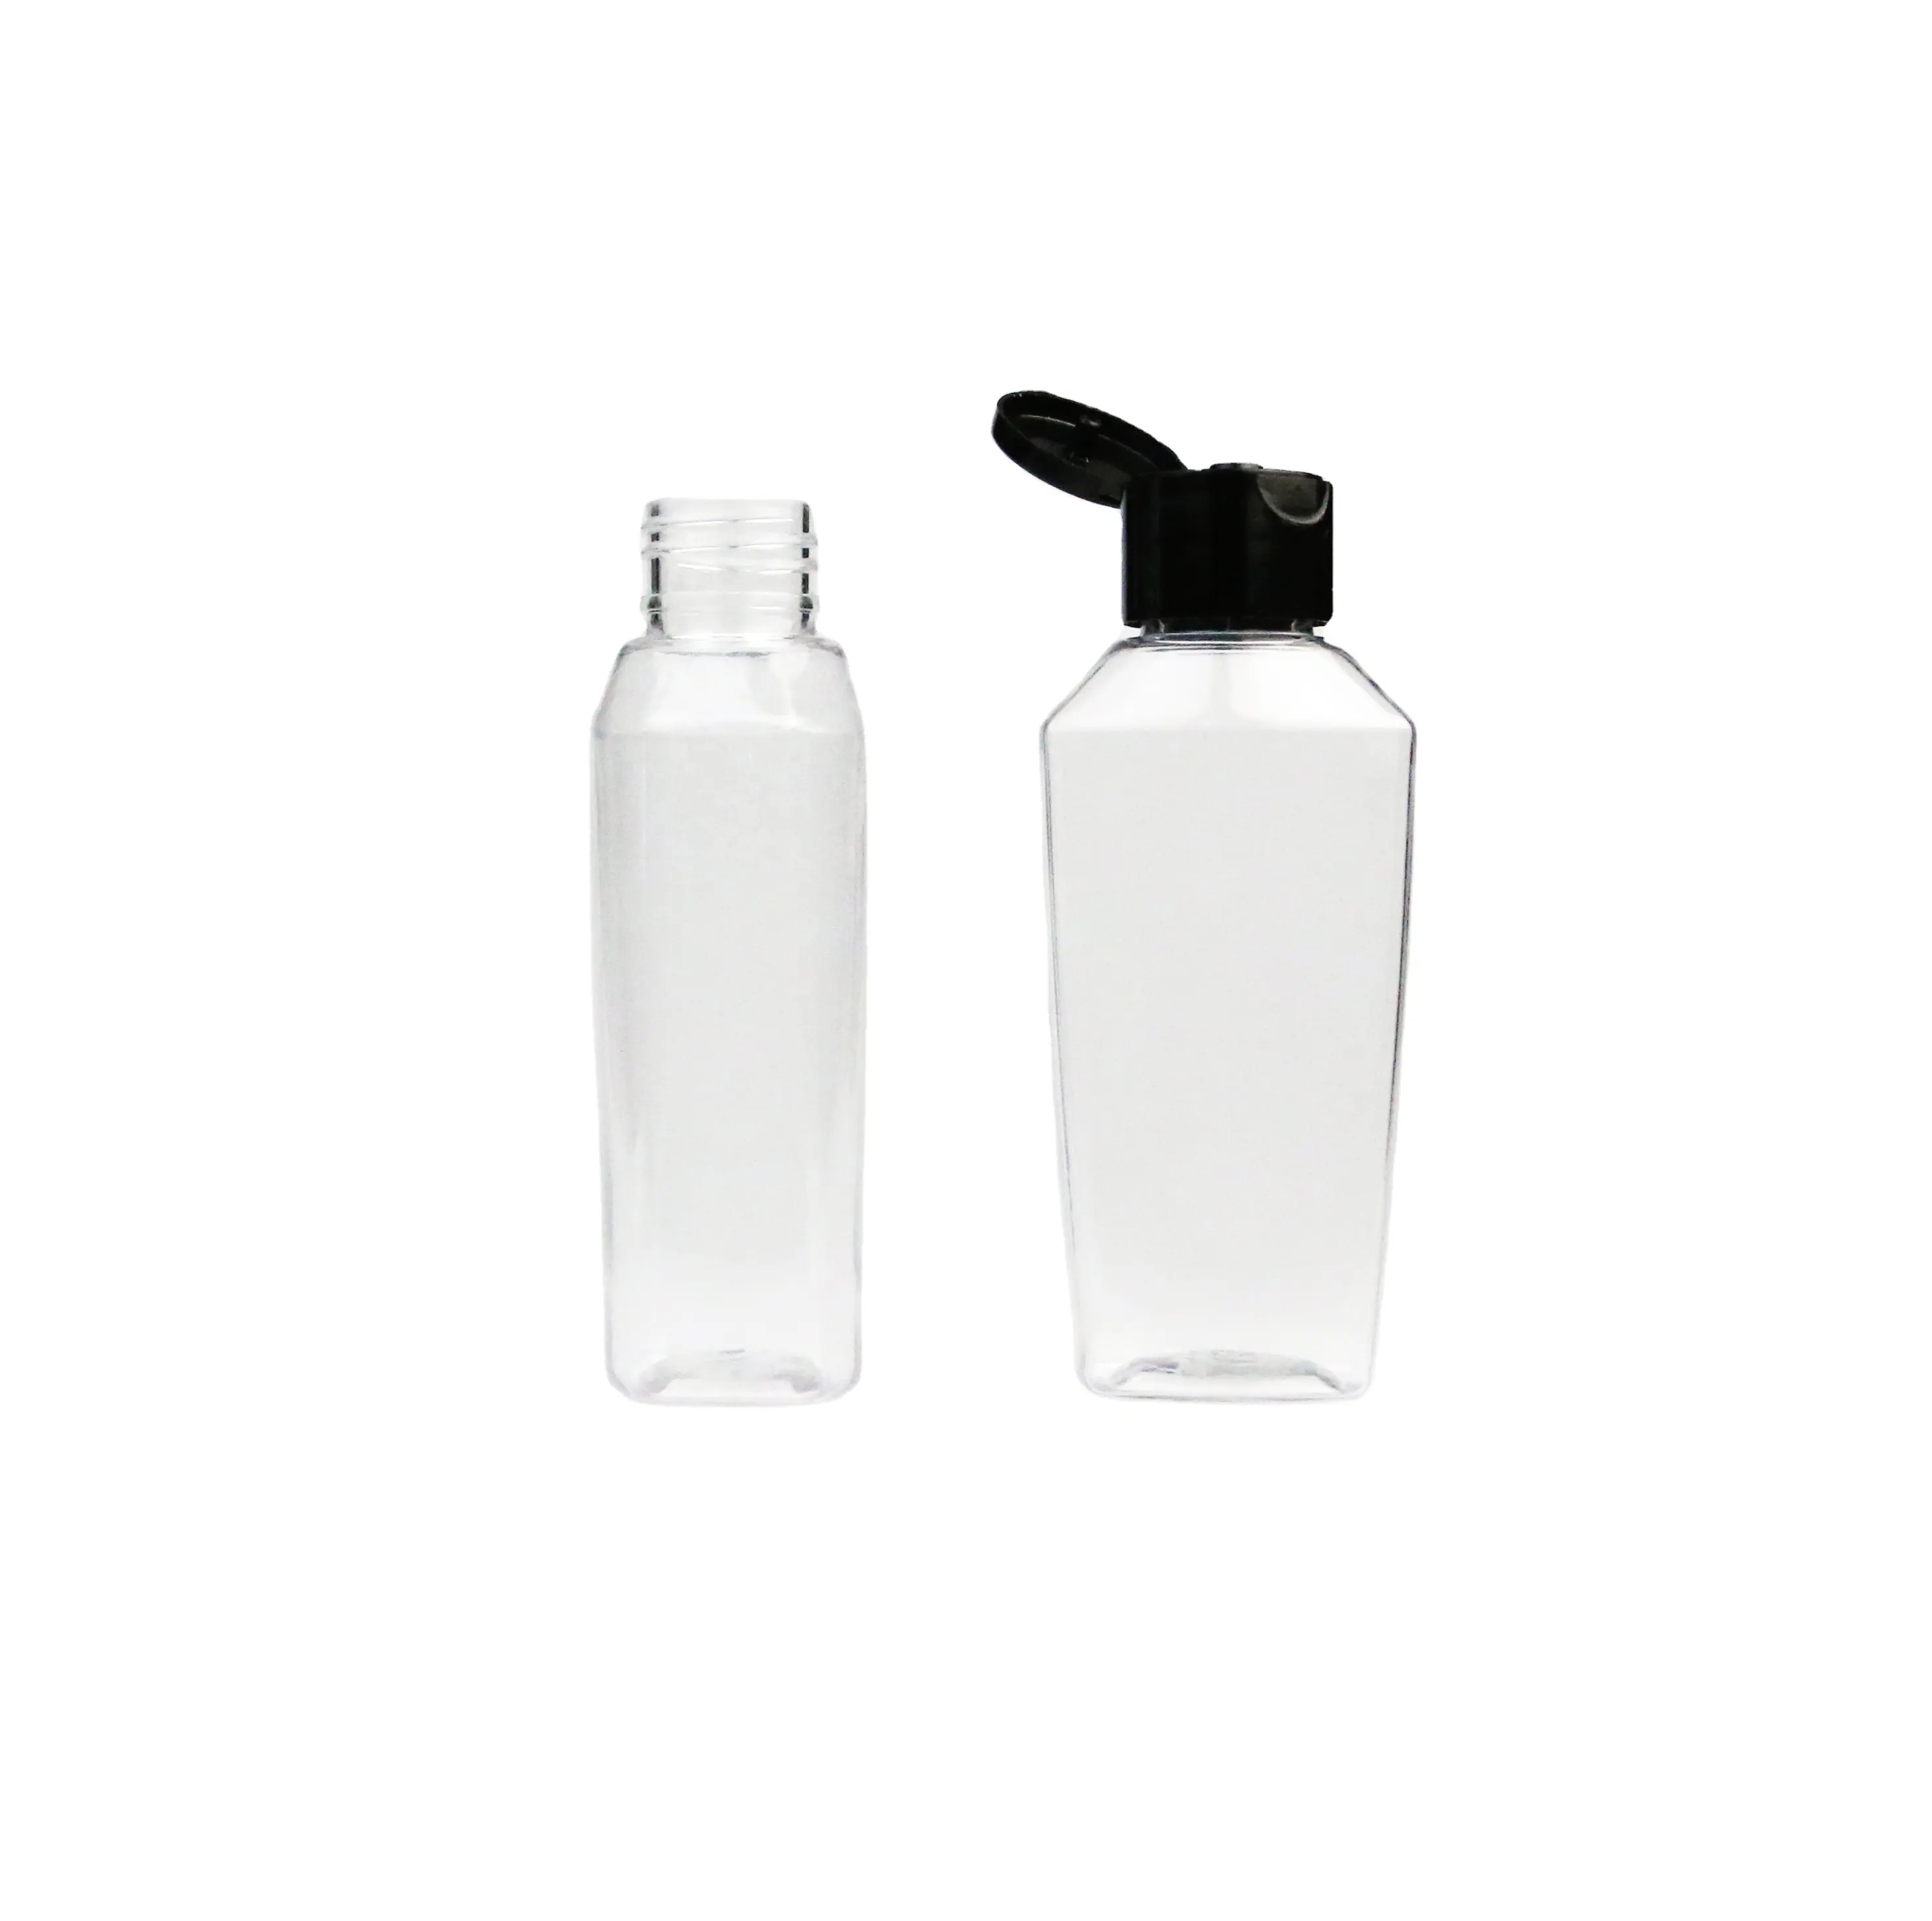 JS Free Sample PET plastic bottle 100ml oval hand sanitizer essential oil bottle wash sanitizer bottle with flip cap